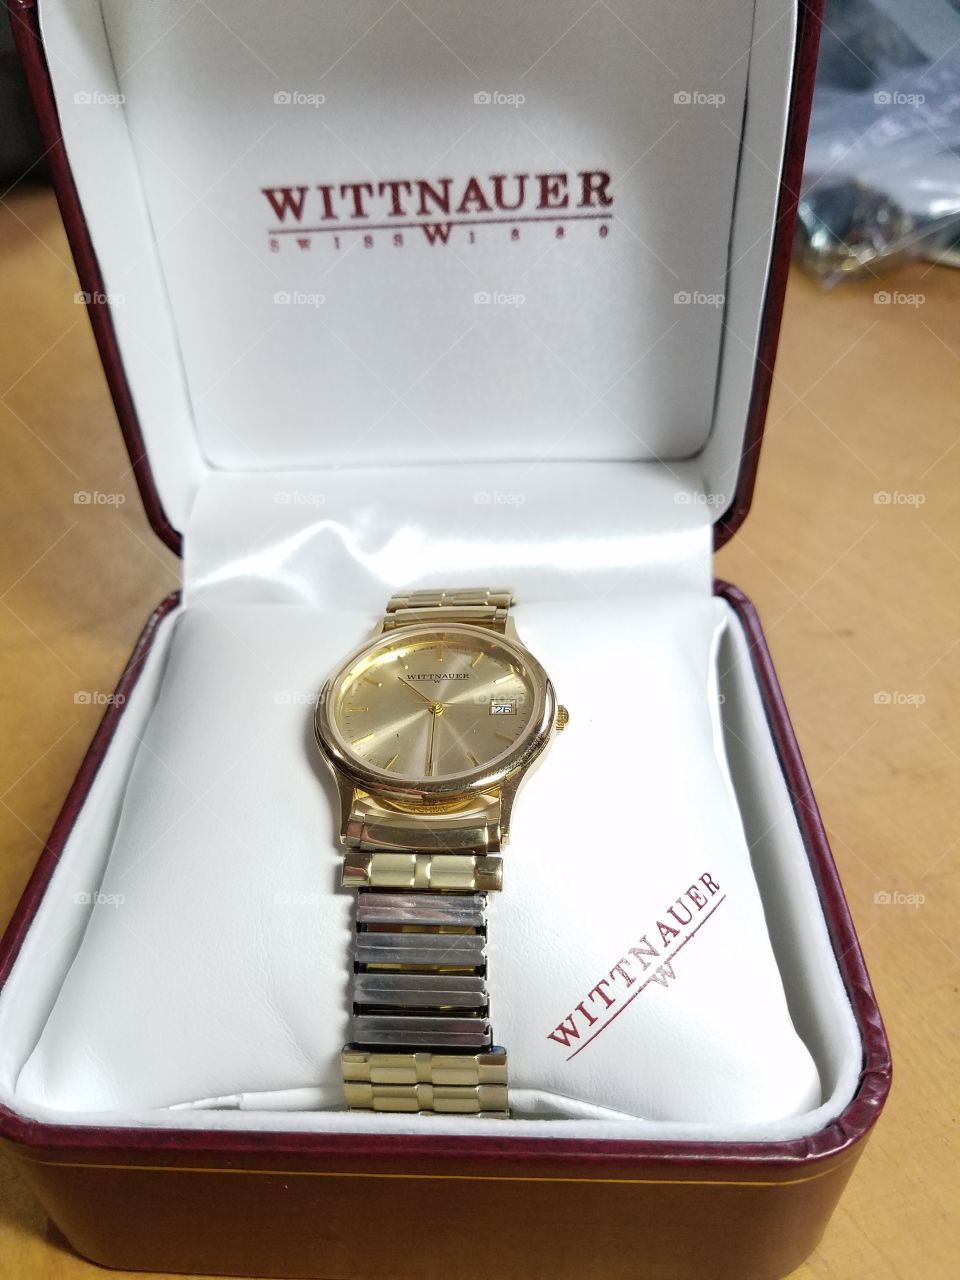 Wittnauer quartz analog watch